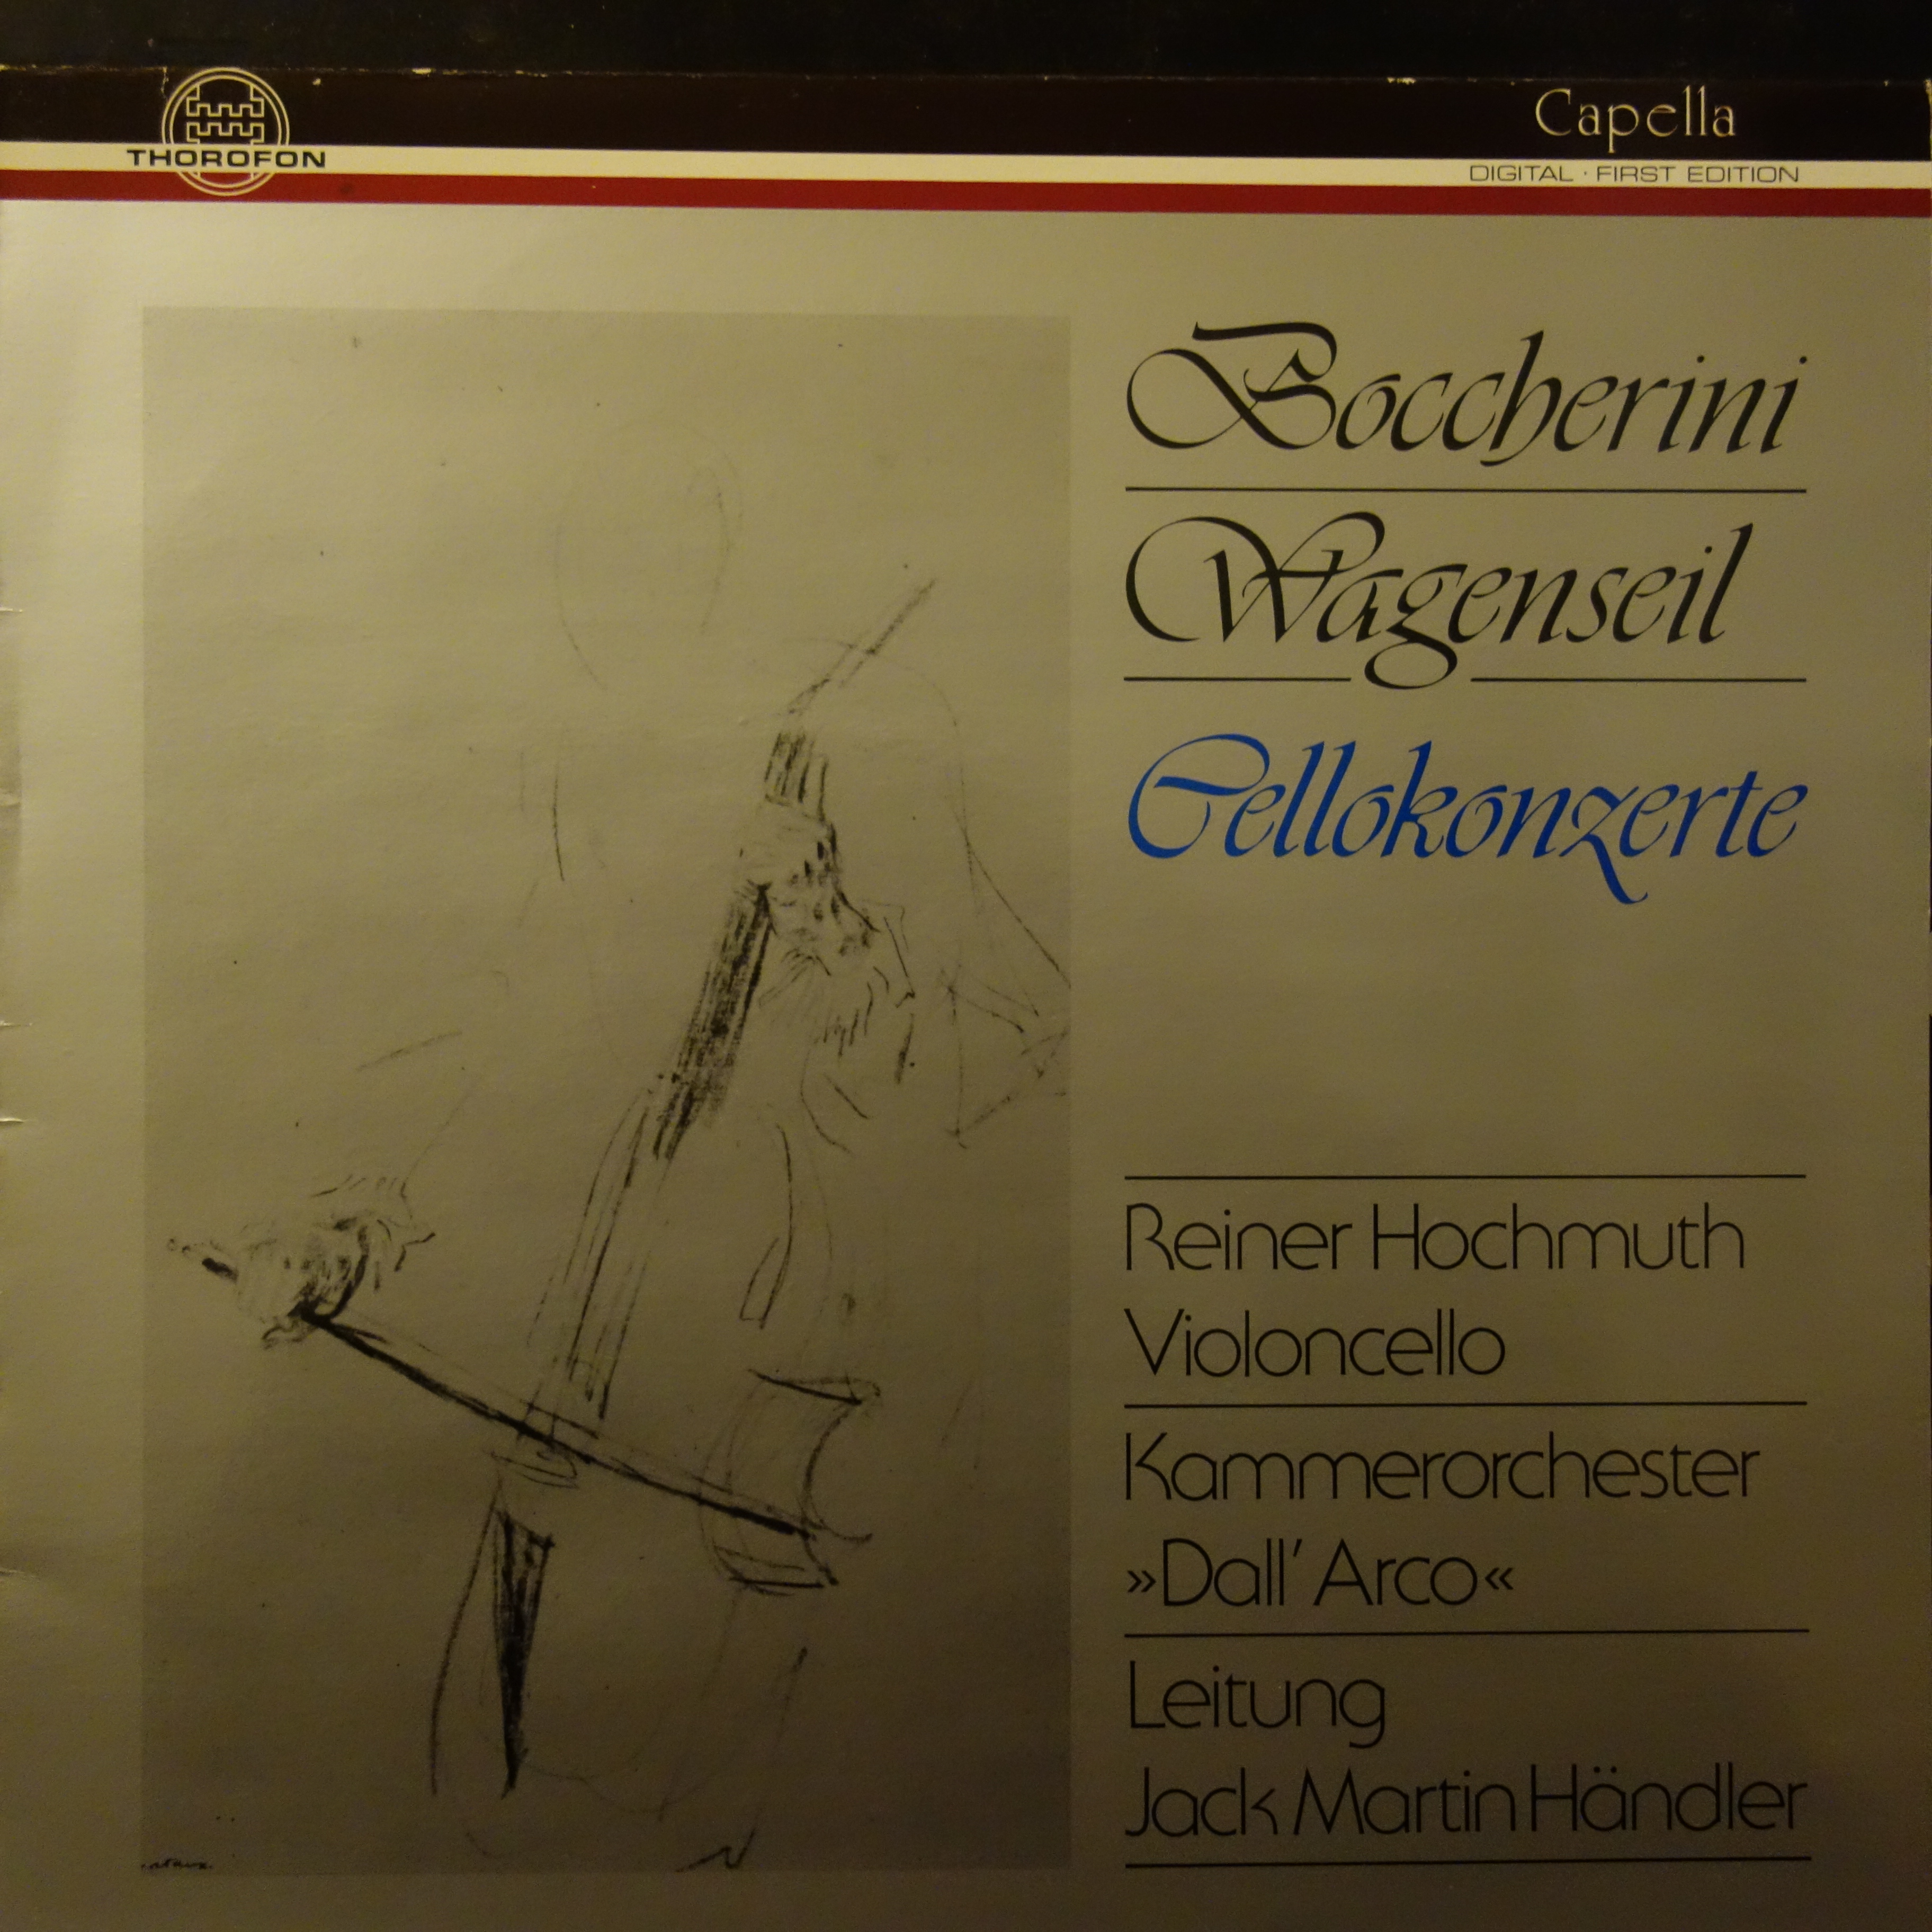 MTH 322 Boccherini / Wagenseil Cello Concertos / Hochmuth